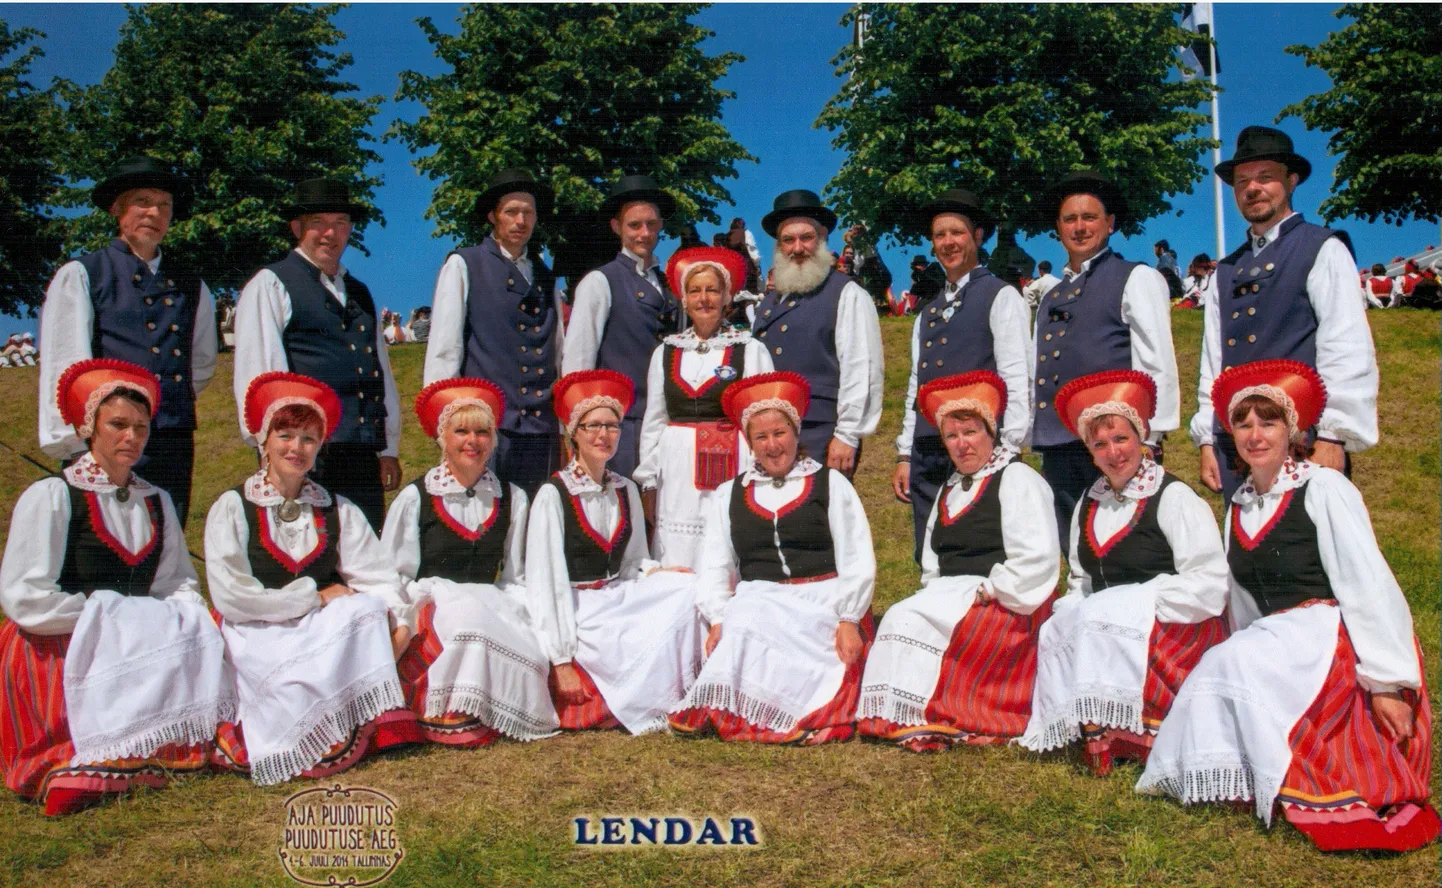 Treimani rahvatantsurühm Lendar 2014. aasta tantsupeol.